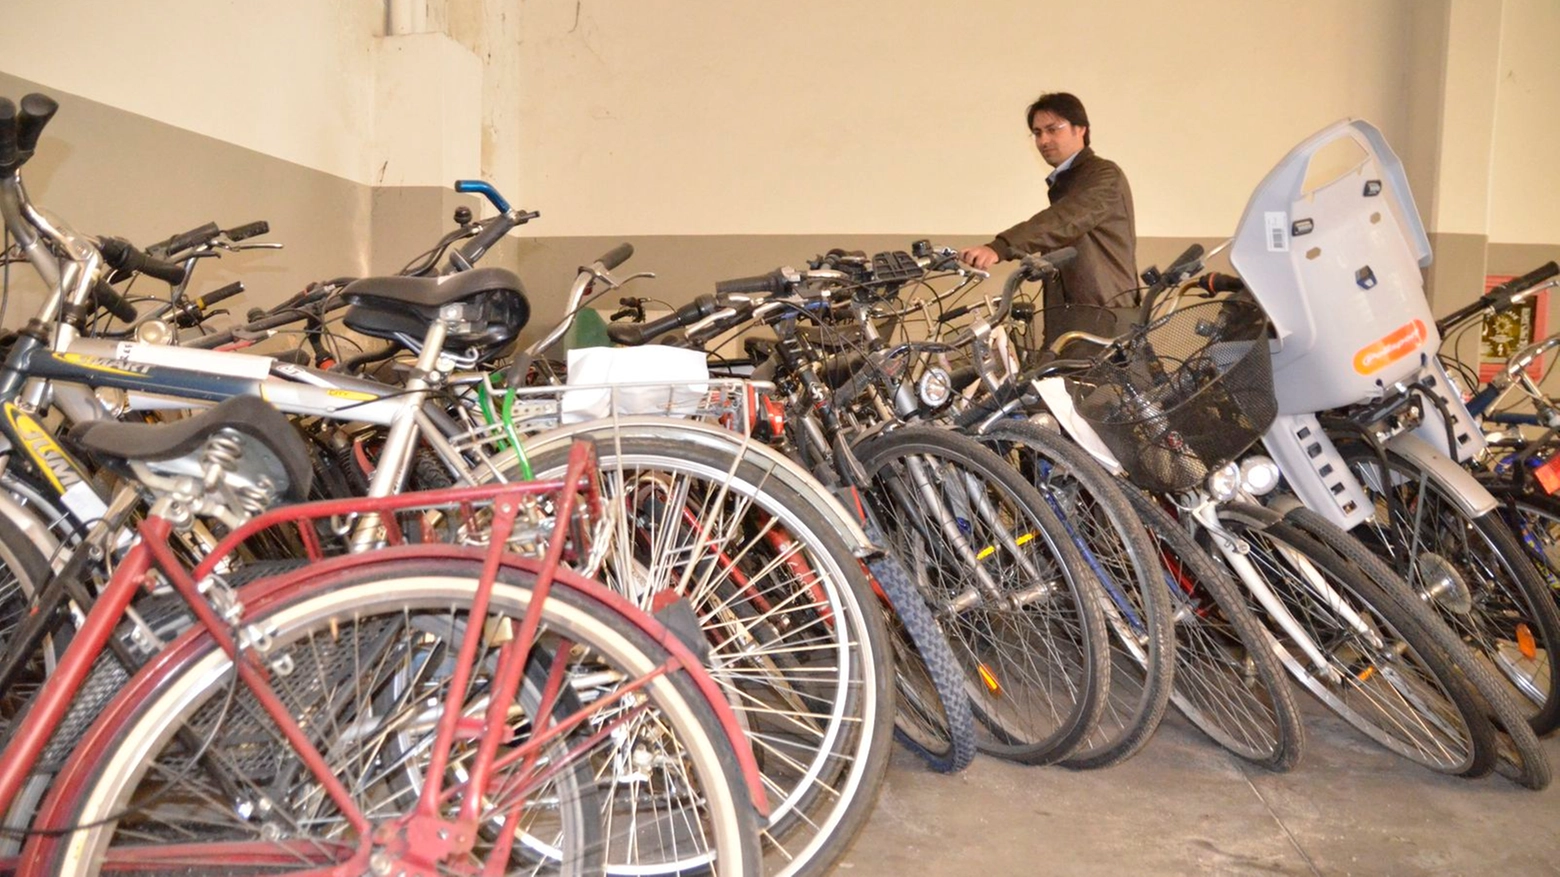 Il deposito della polizia con le bici rubate